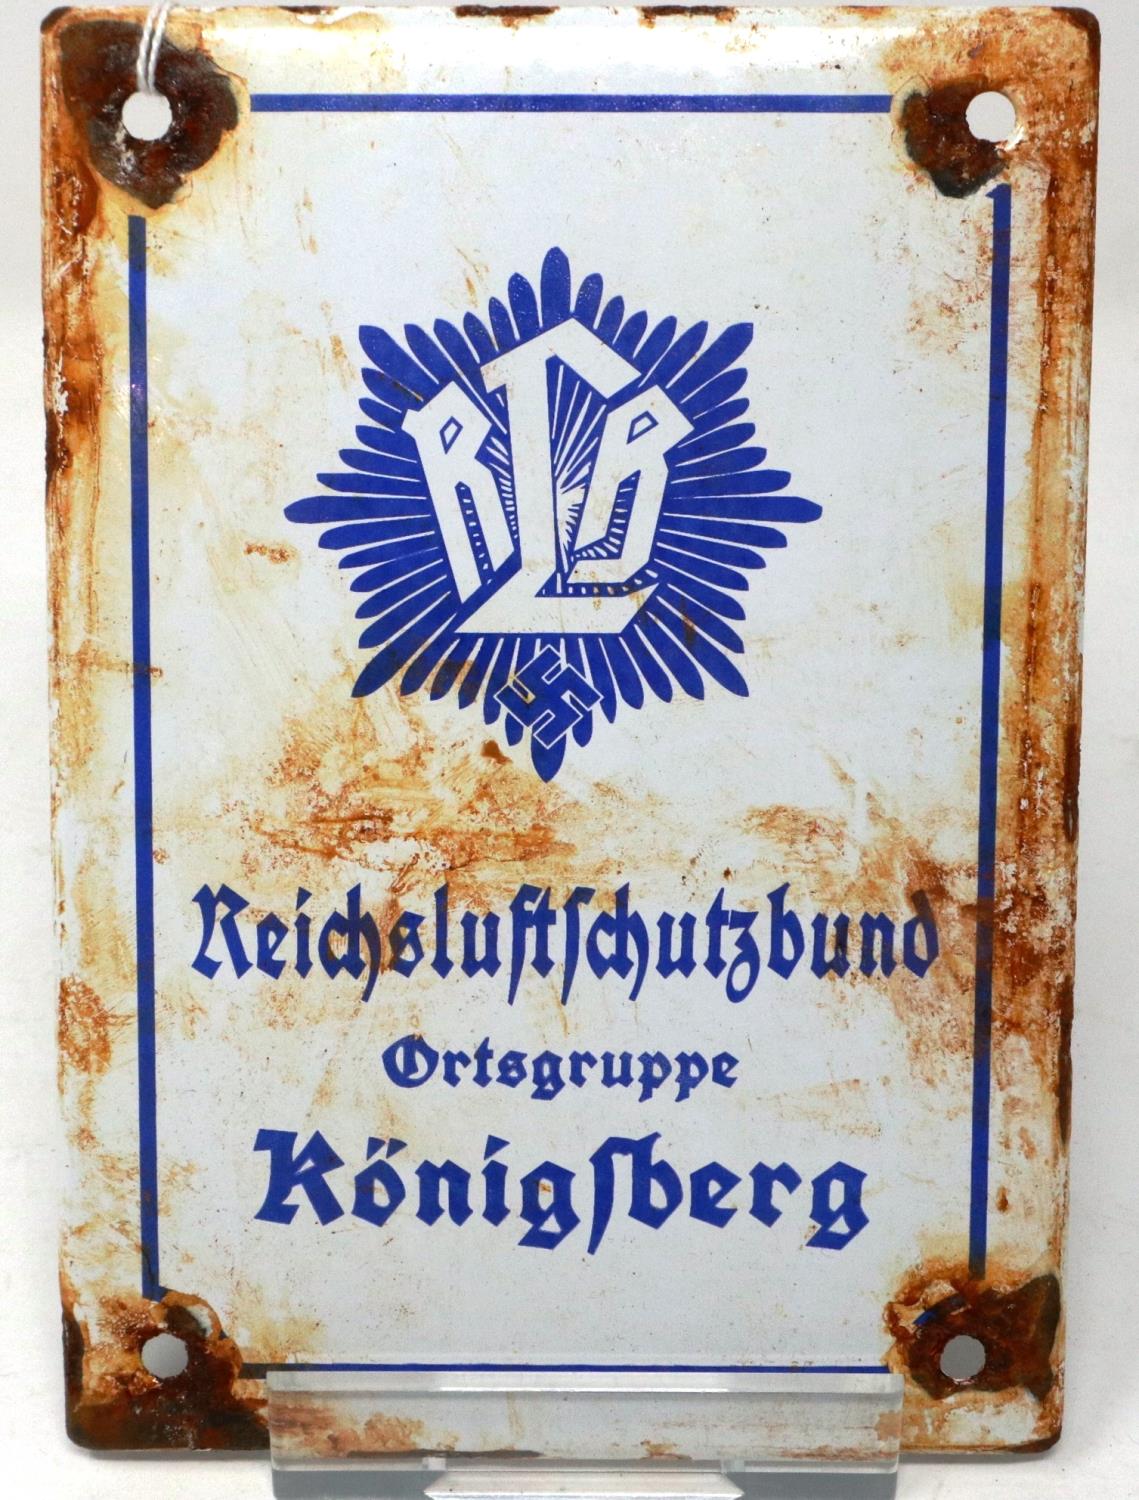 WWII German enamel sign for Reichs Luftschutz Bund, air raid wardens meeting place in Konigsberg,